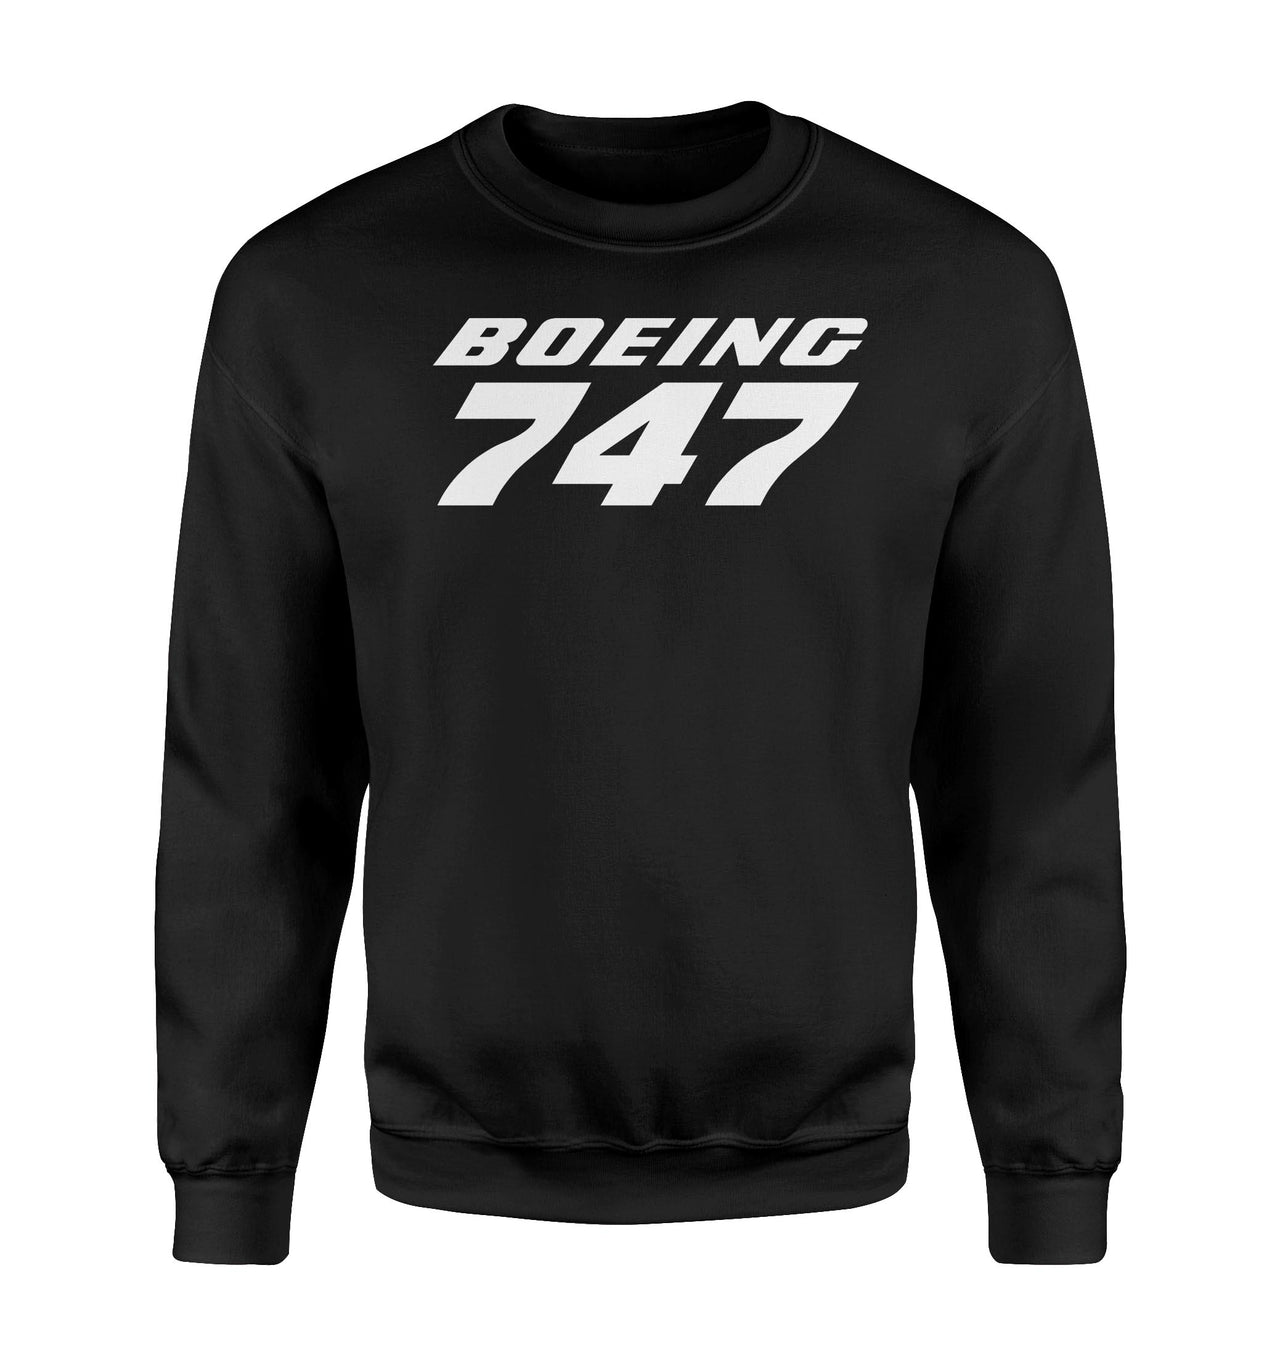 Boeing 747 & Text Designed Sweatshirts